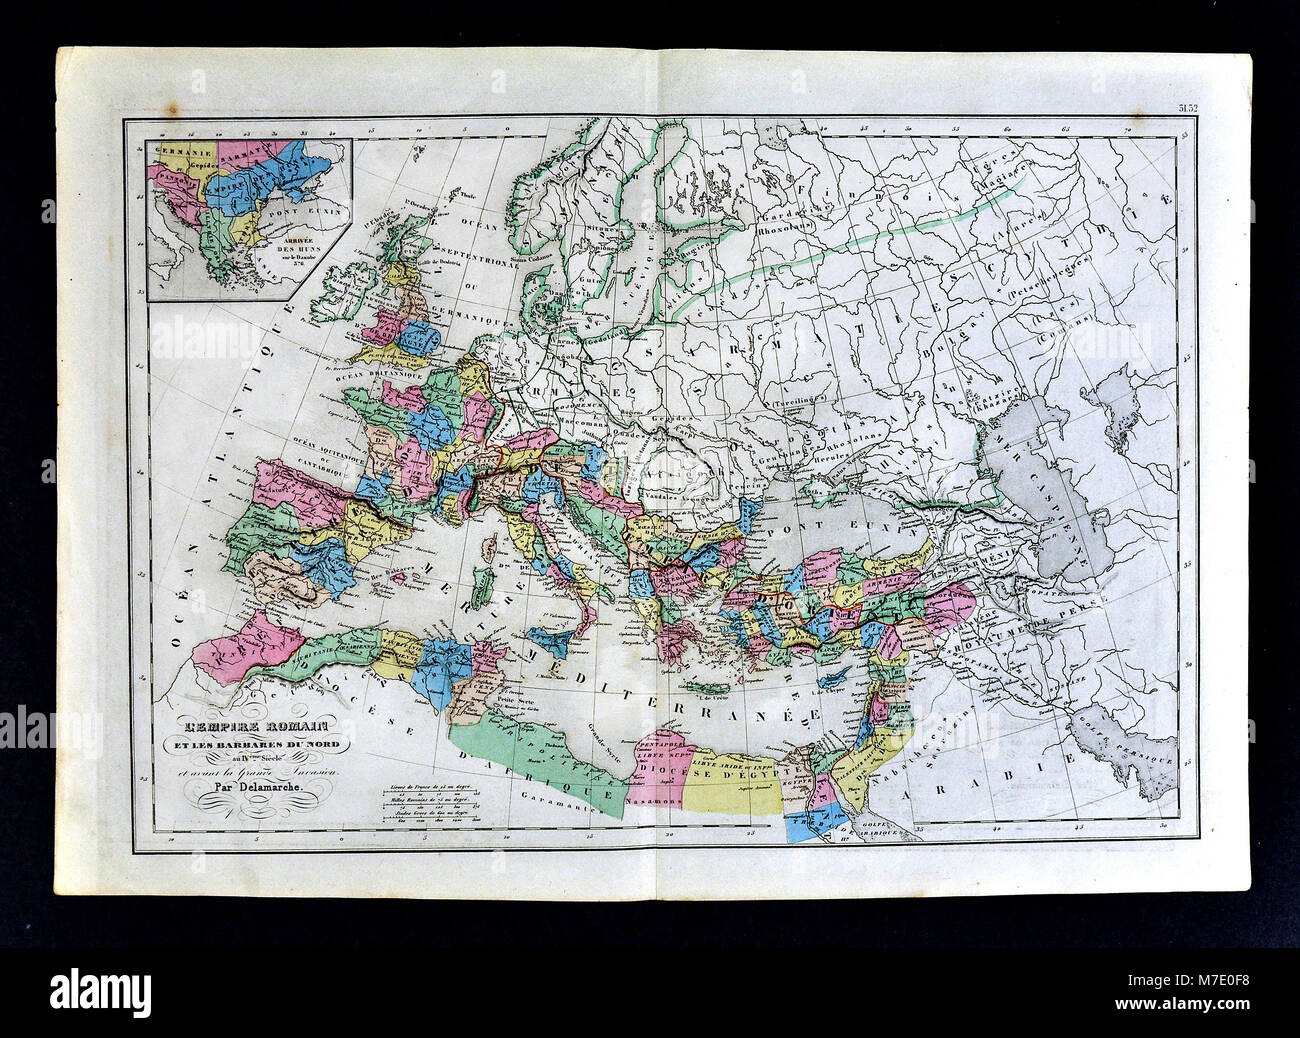 Delamarche 1858 Carte historique de l'Europe montrant l'Empire romain au 4ème siècle avant l'invasion barbare Banque D'Images